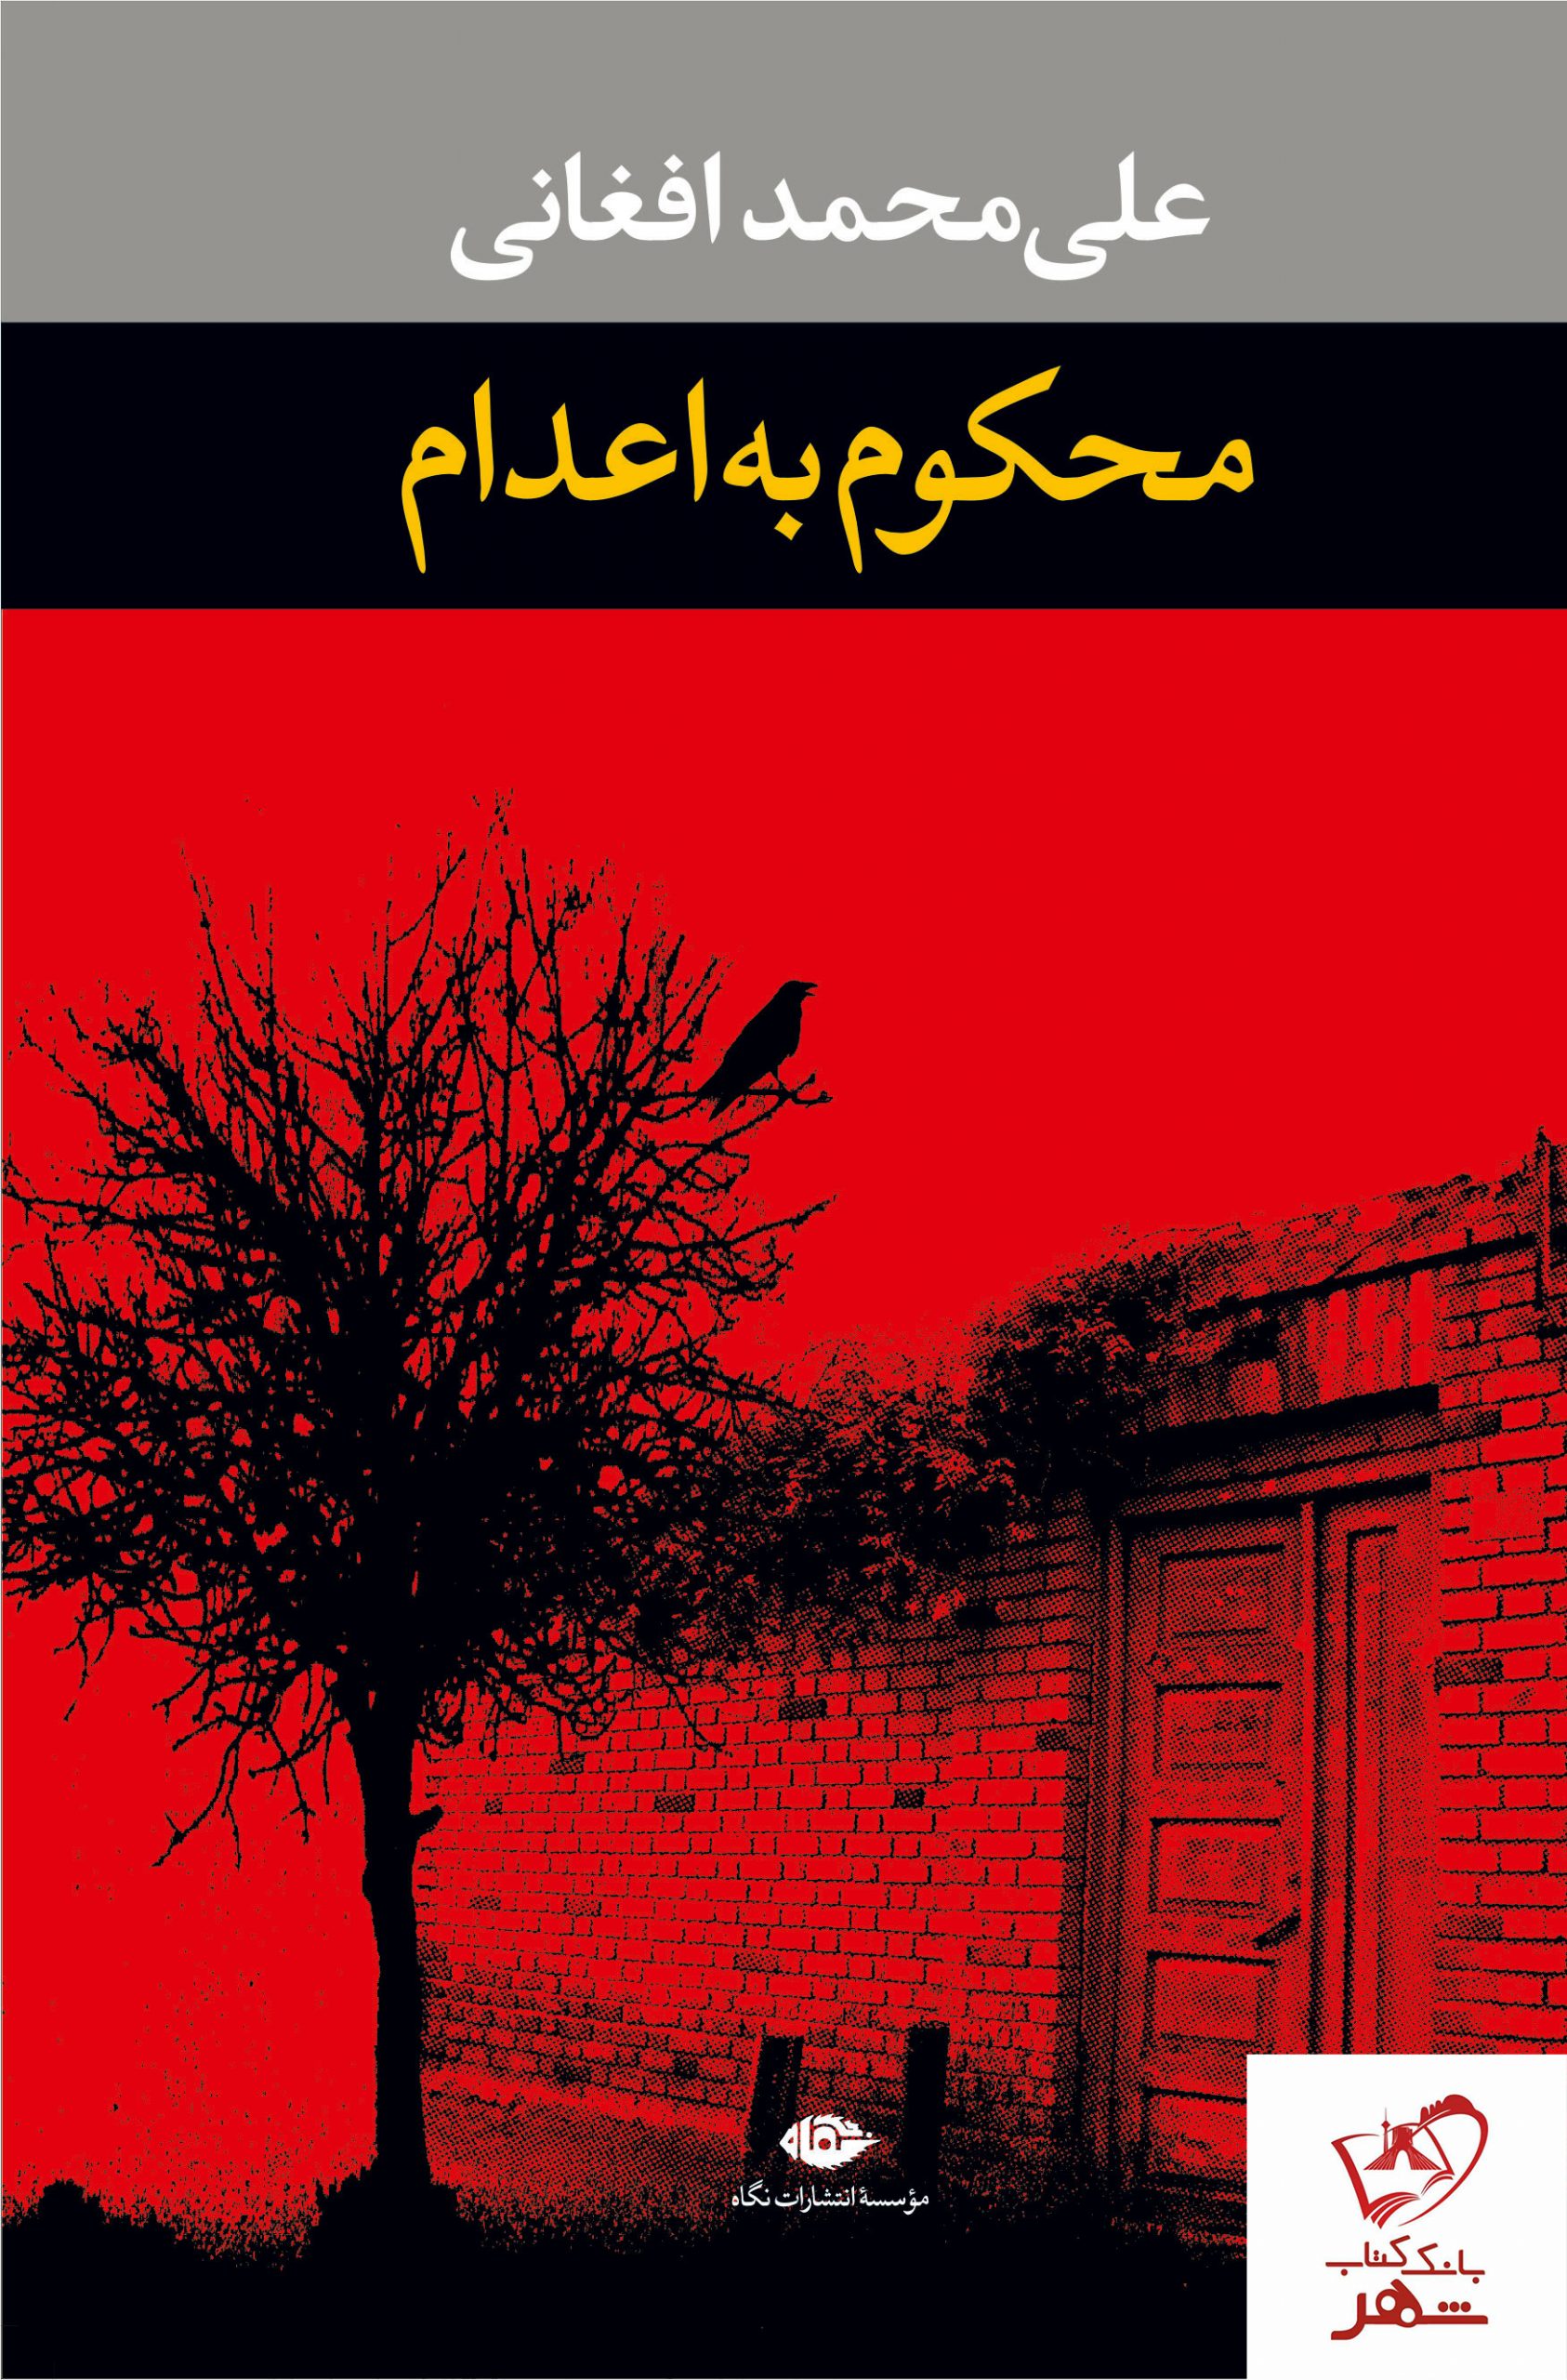 خرید کتاب محکوم به اعدام نوشته علی محمد افغانی از نشر نگاه